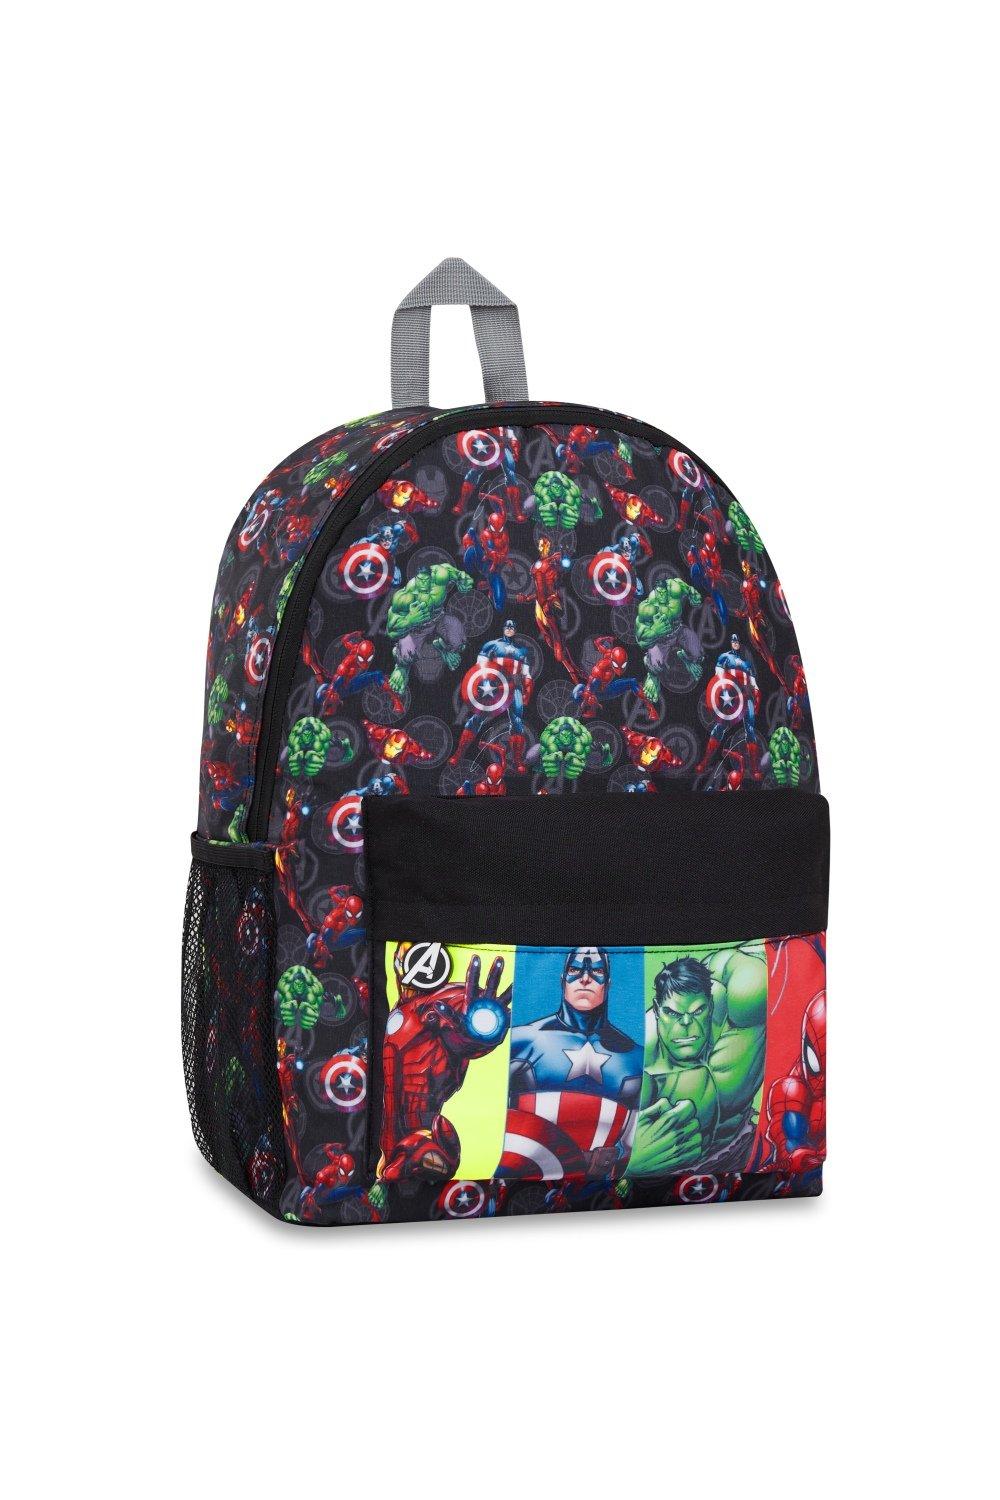 Рюкзак школы Мстителей Marvel, мультиколор детский рюкзак в kidergarten милый школьный рюкзак для мальчиков и девочек школьные сумки с мультипликационным рисунком детский подарок школь